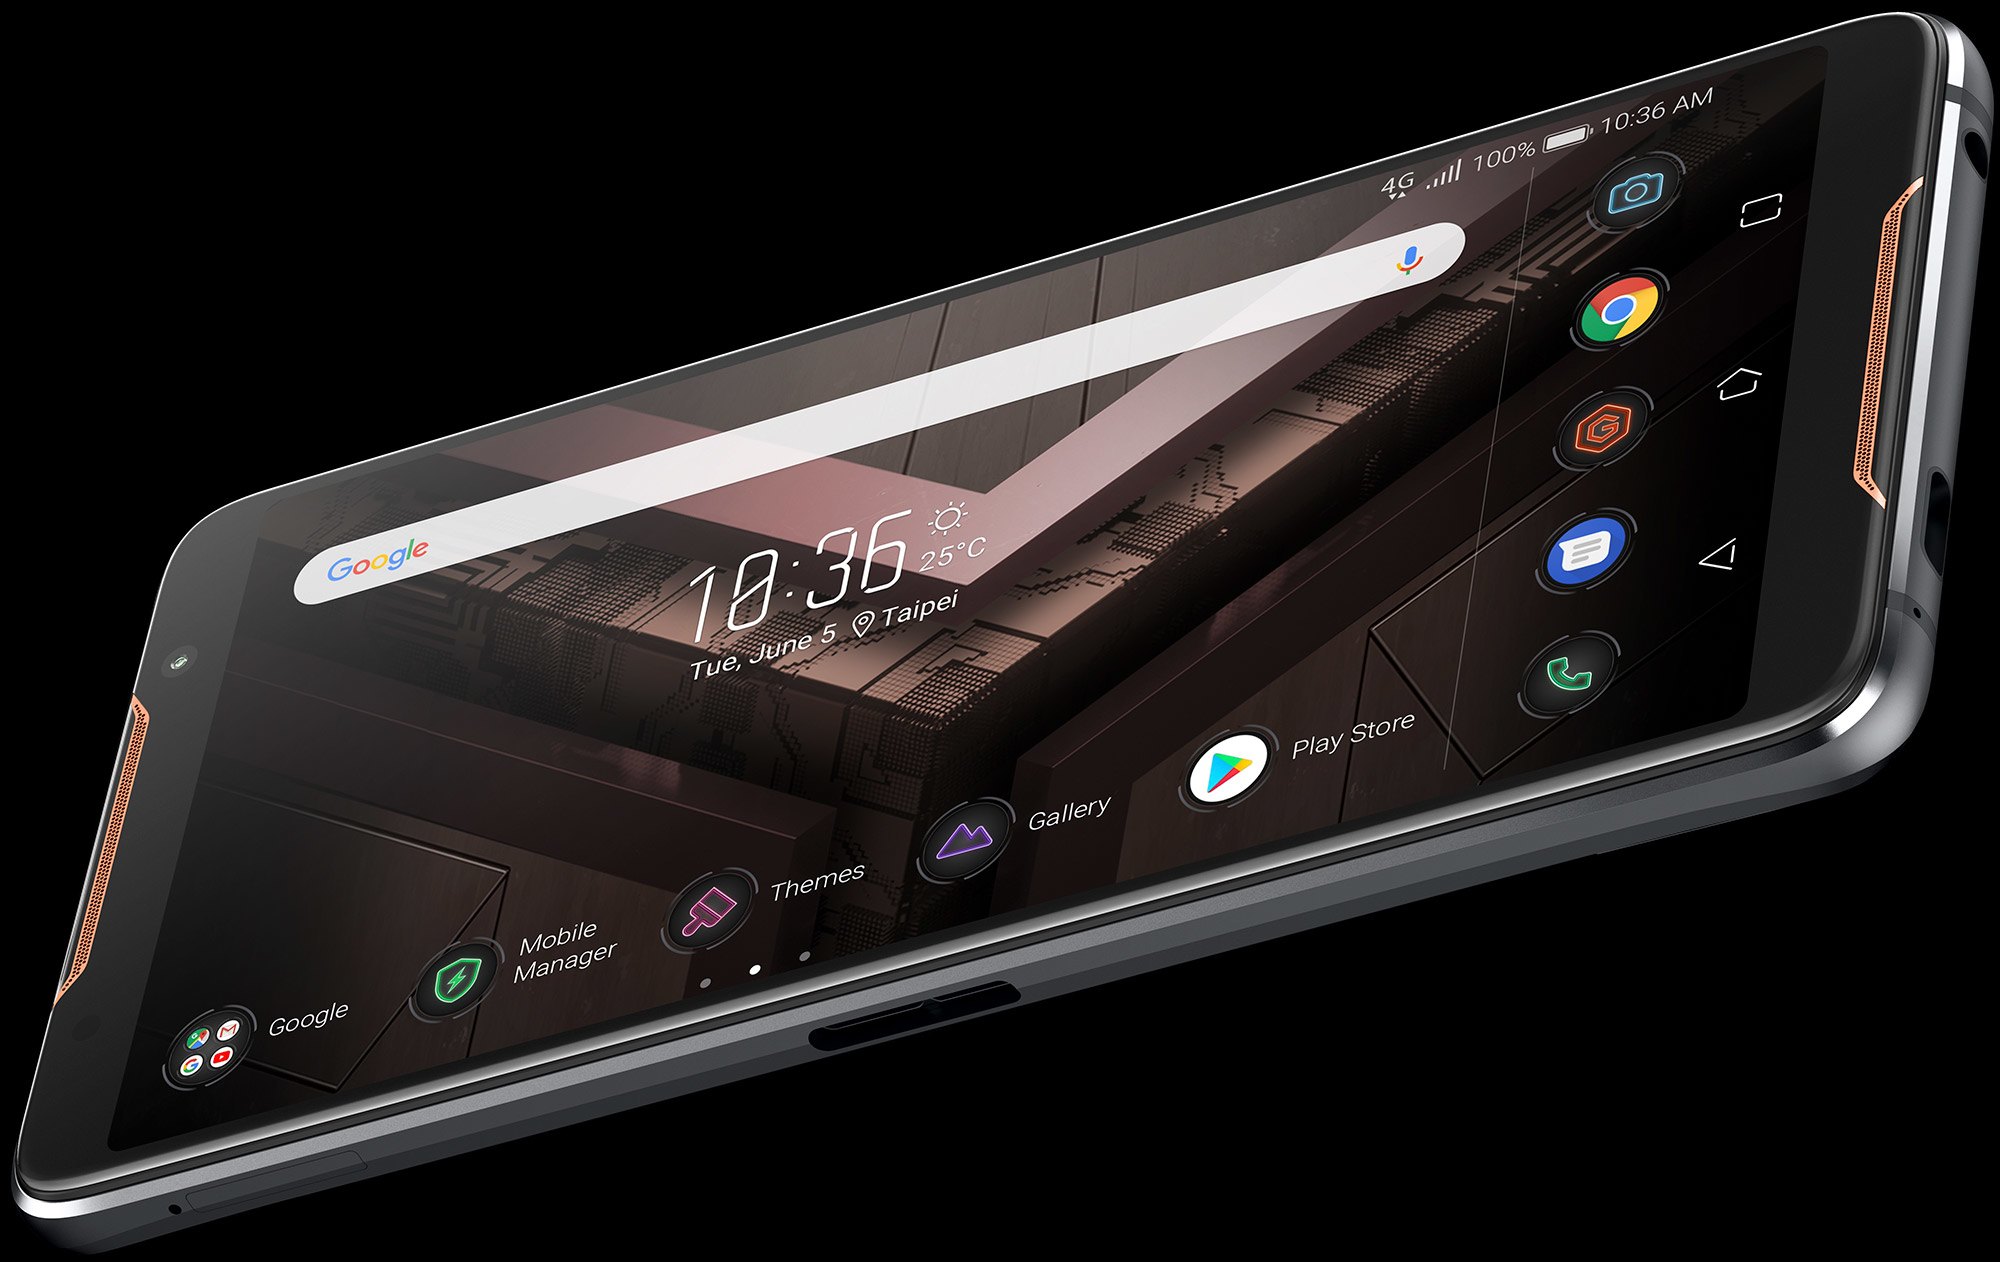 Asus ROG Phone tem versão especial do Snapdragon 845 e duas portas USB